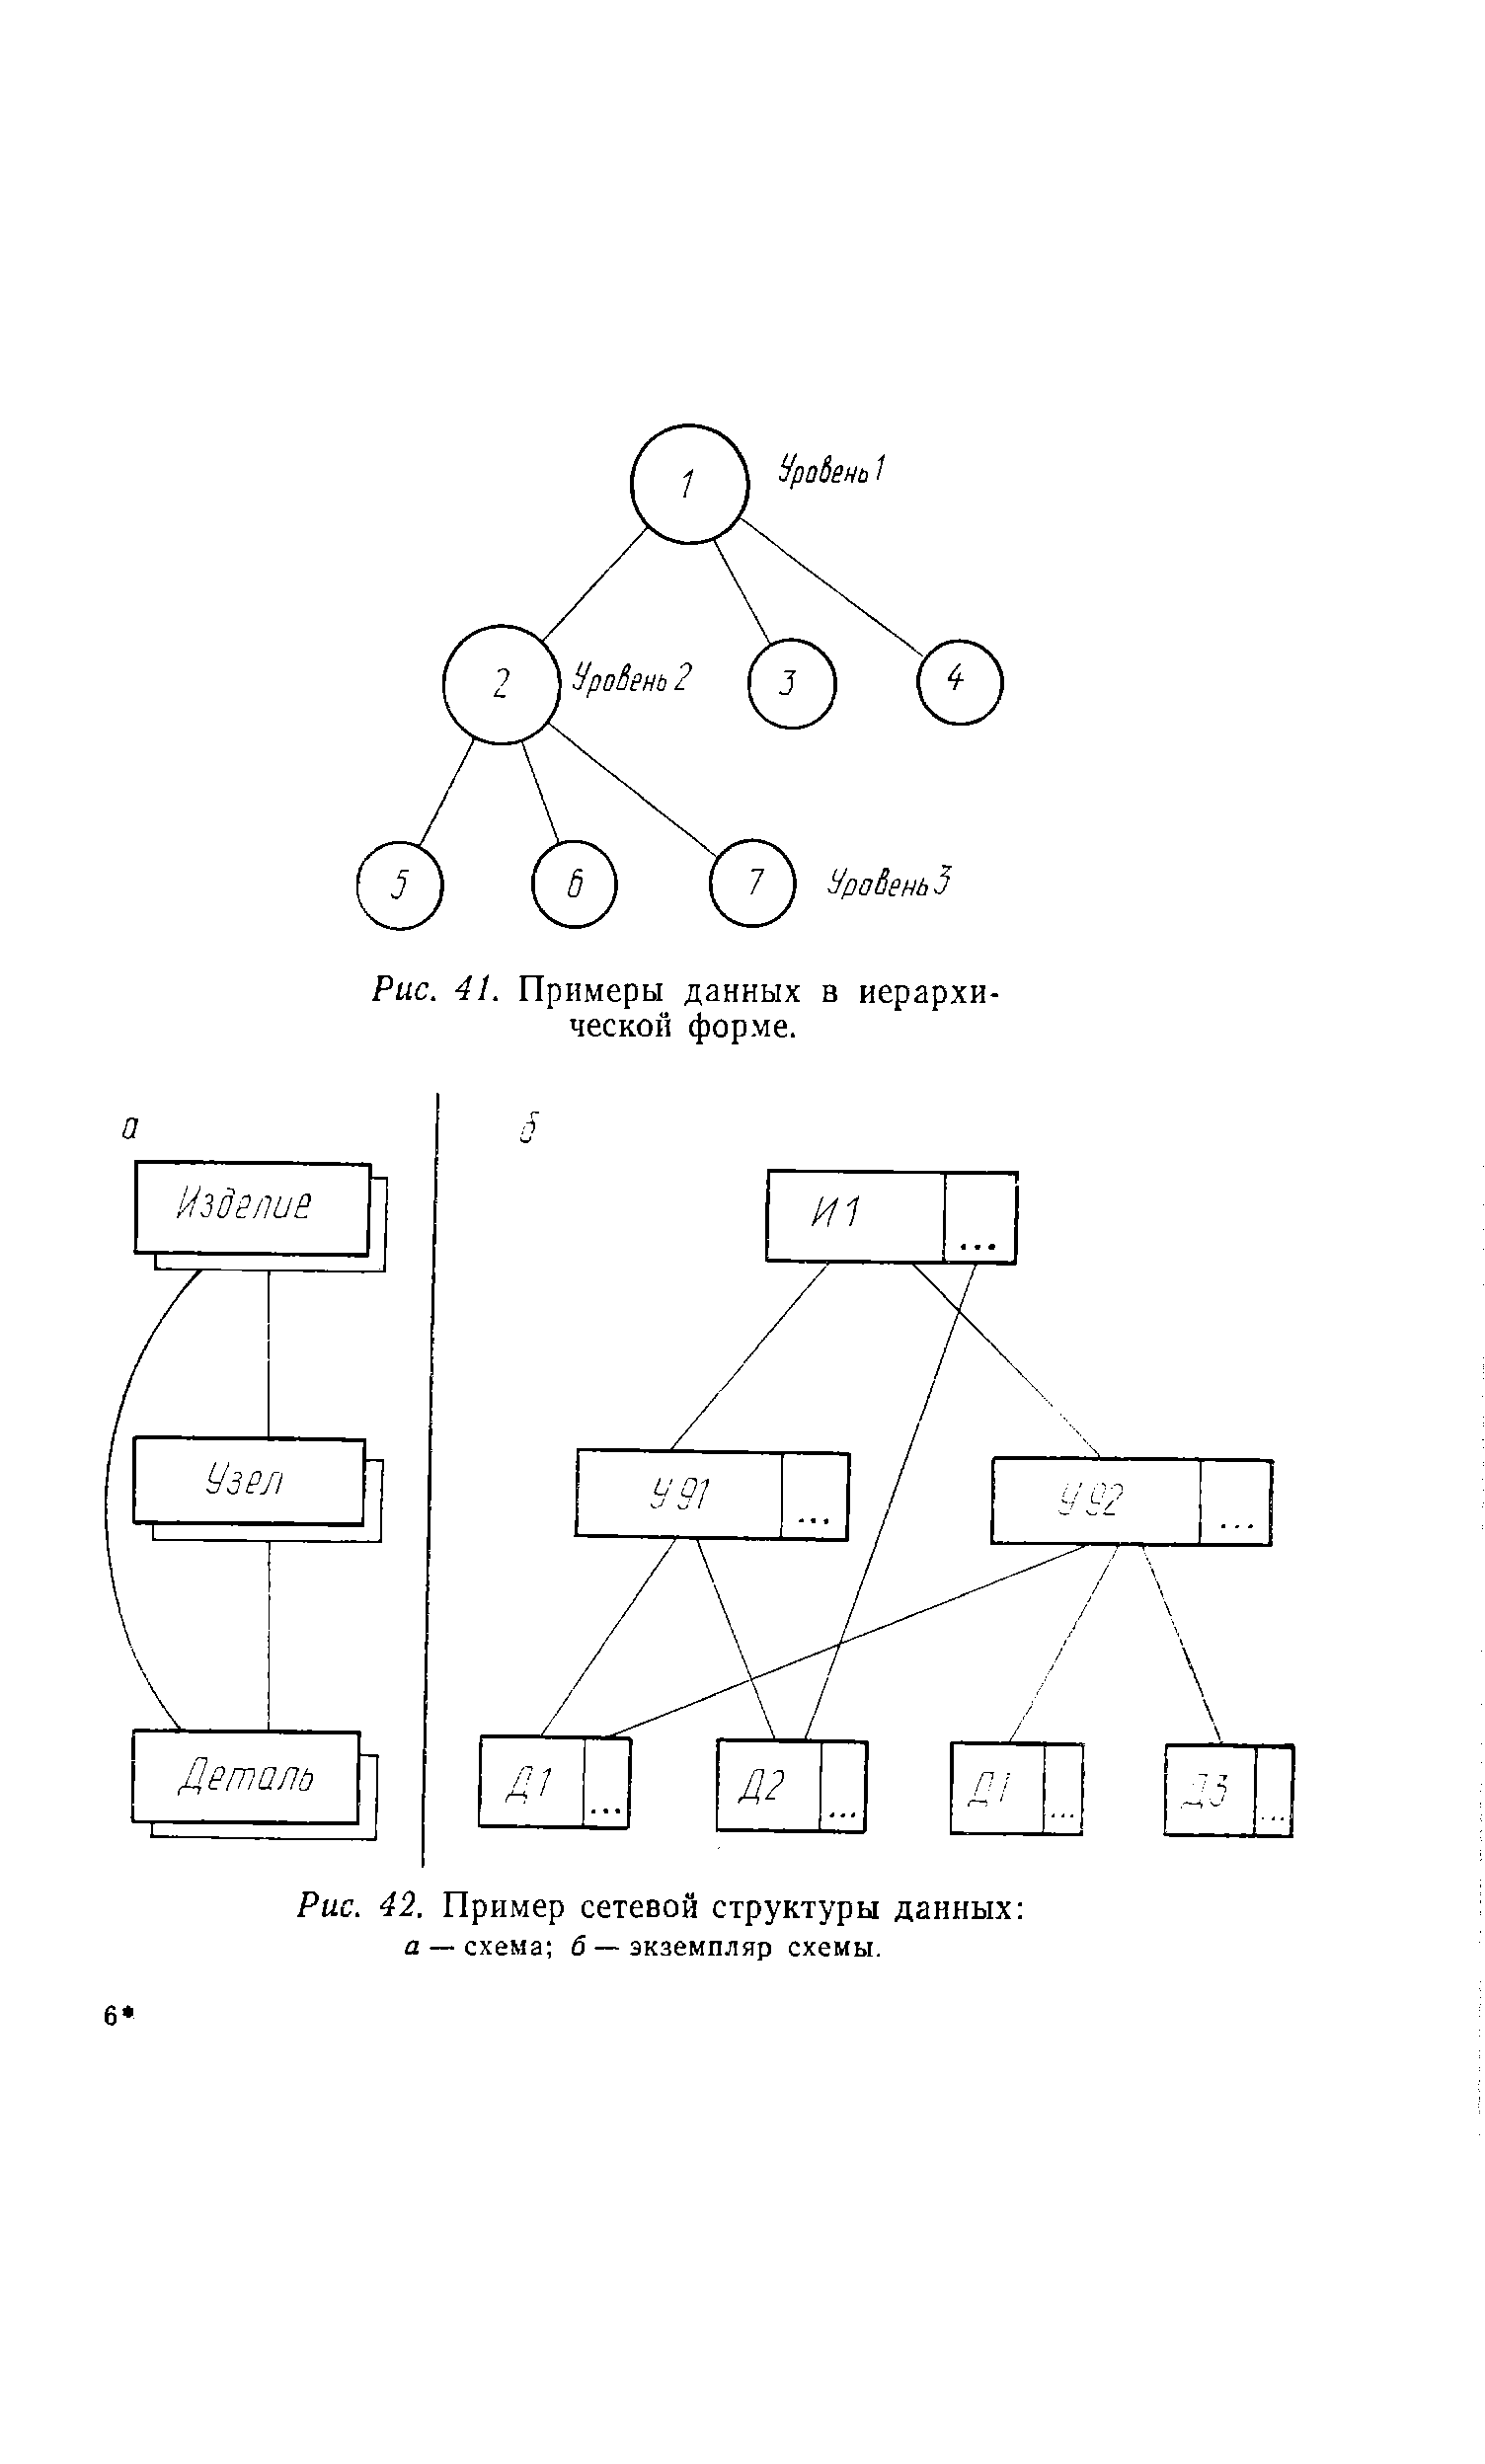 Рис. 42. Пример сетевой структуры данных 2 — схема б— экземпляр схемы.
